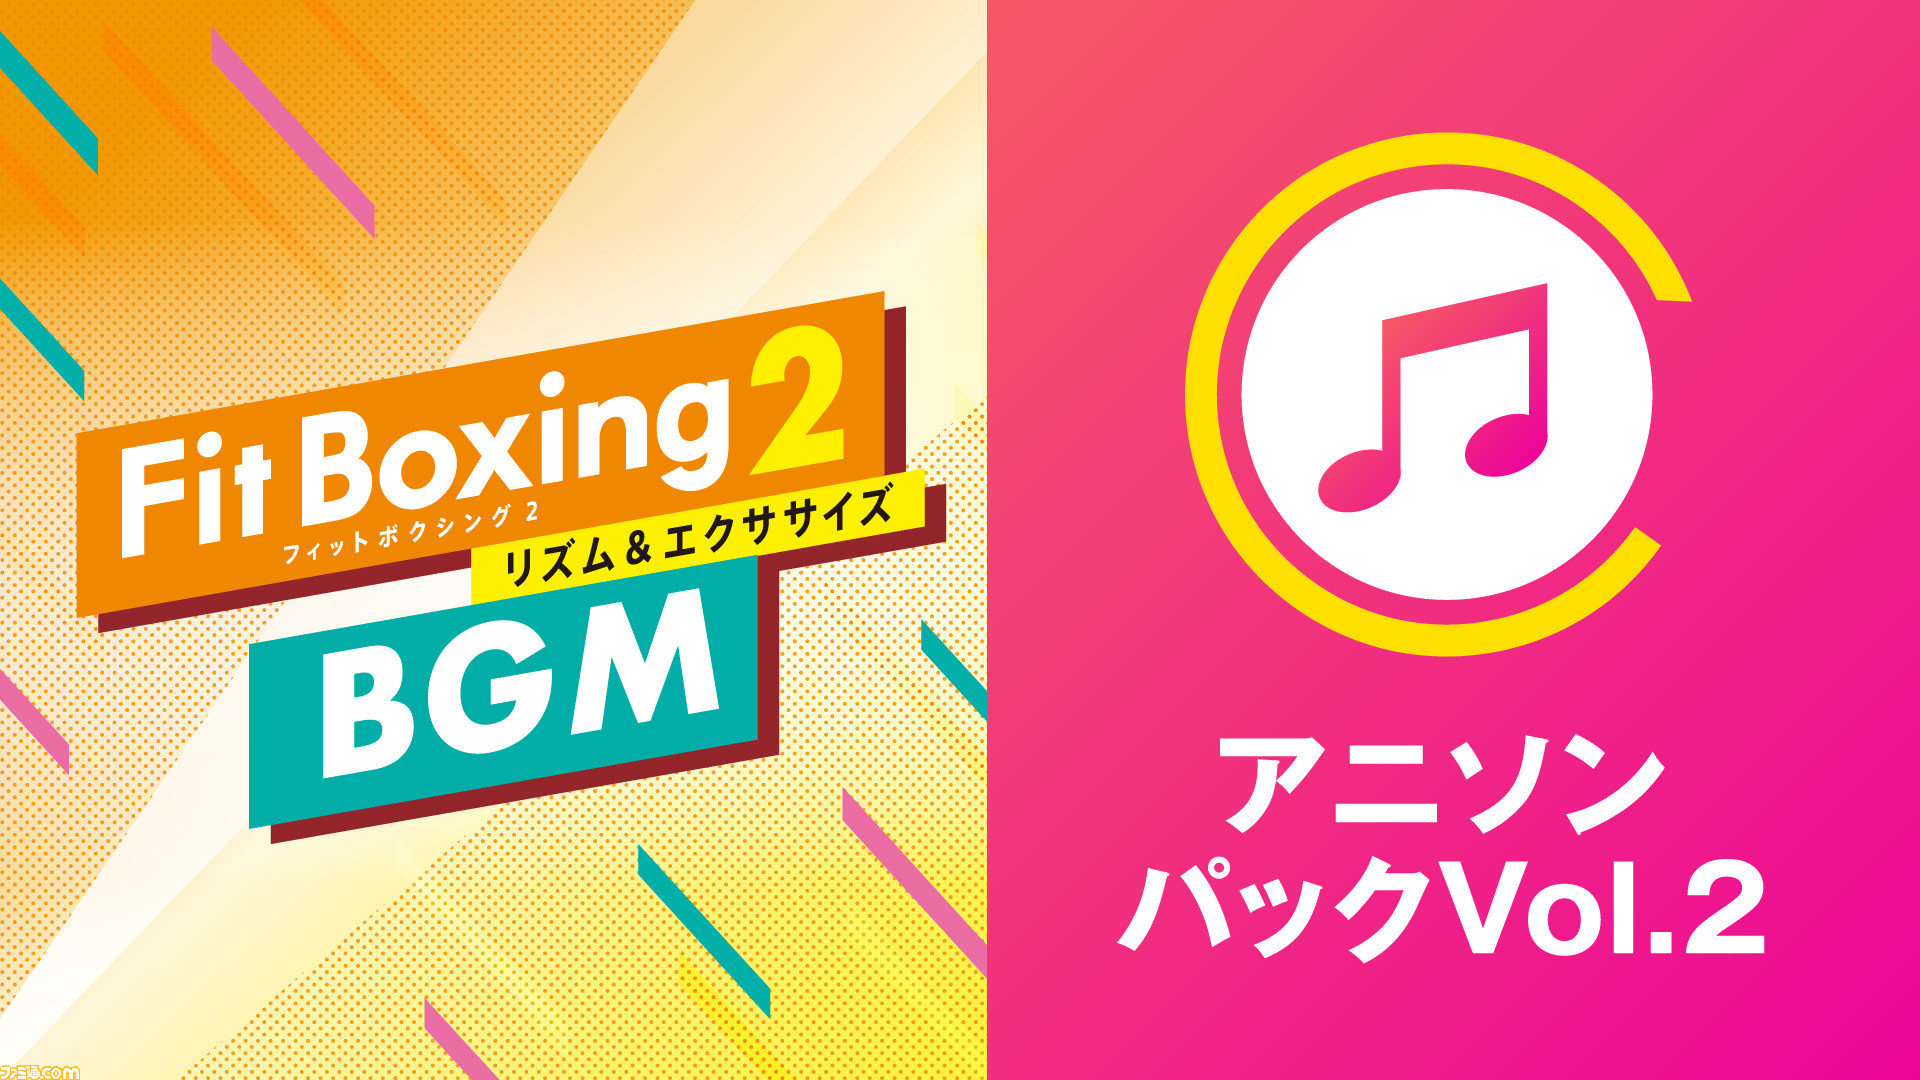 フィットボクシング2』BGM追加DLC“アニソンパック Vol.2”が配信開始